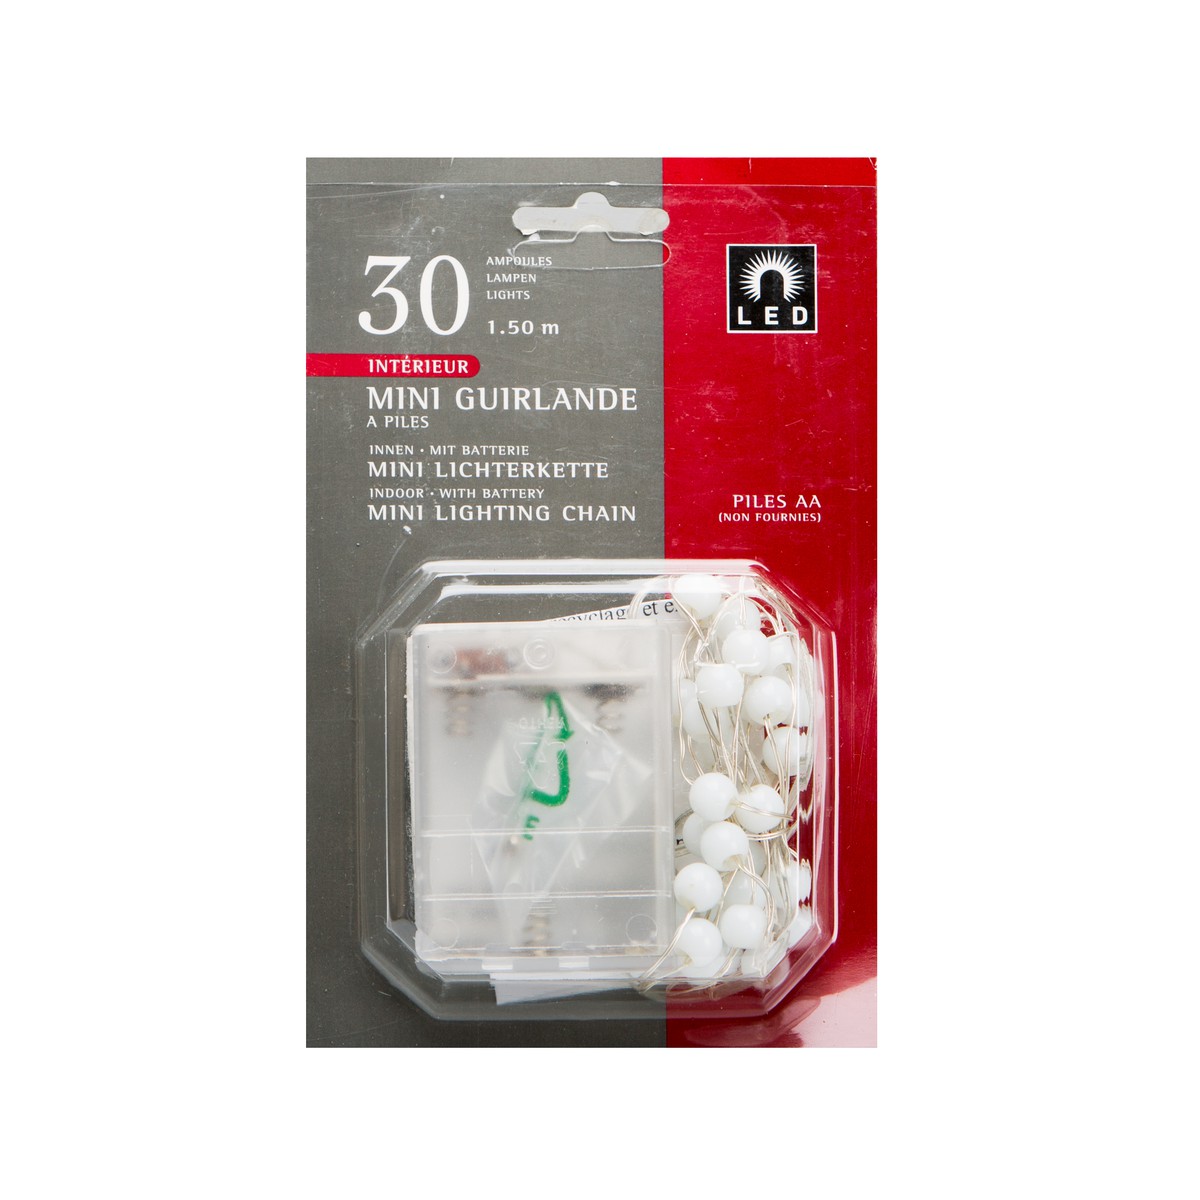   Guirlande Int. LED mini Boules à piles 30L  200cm